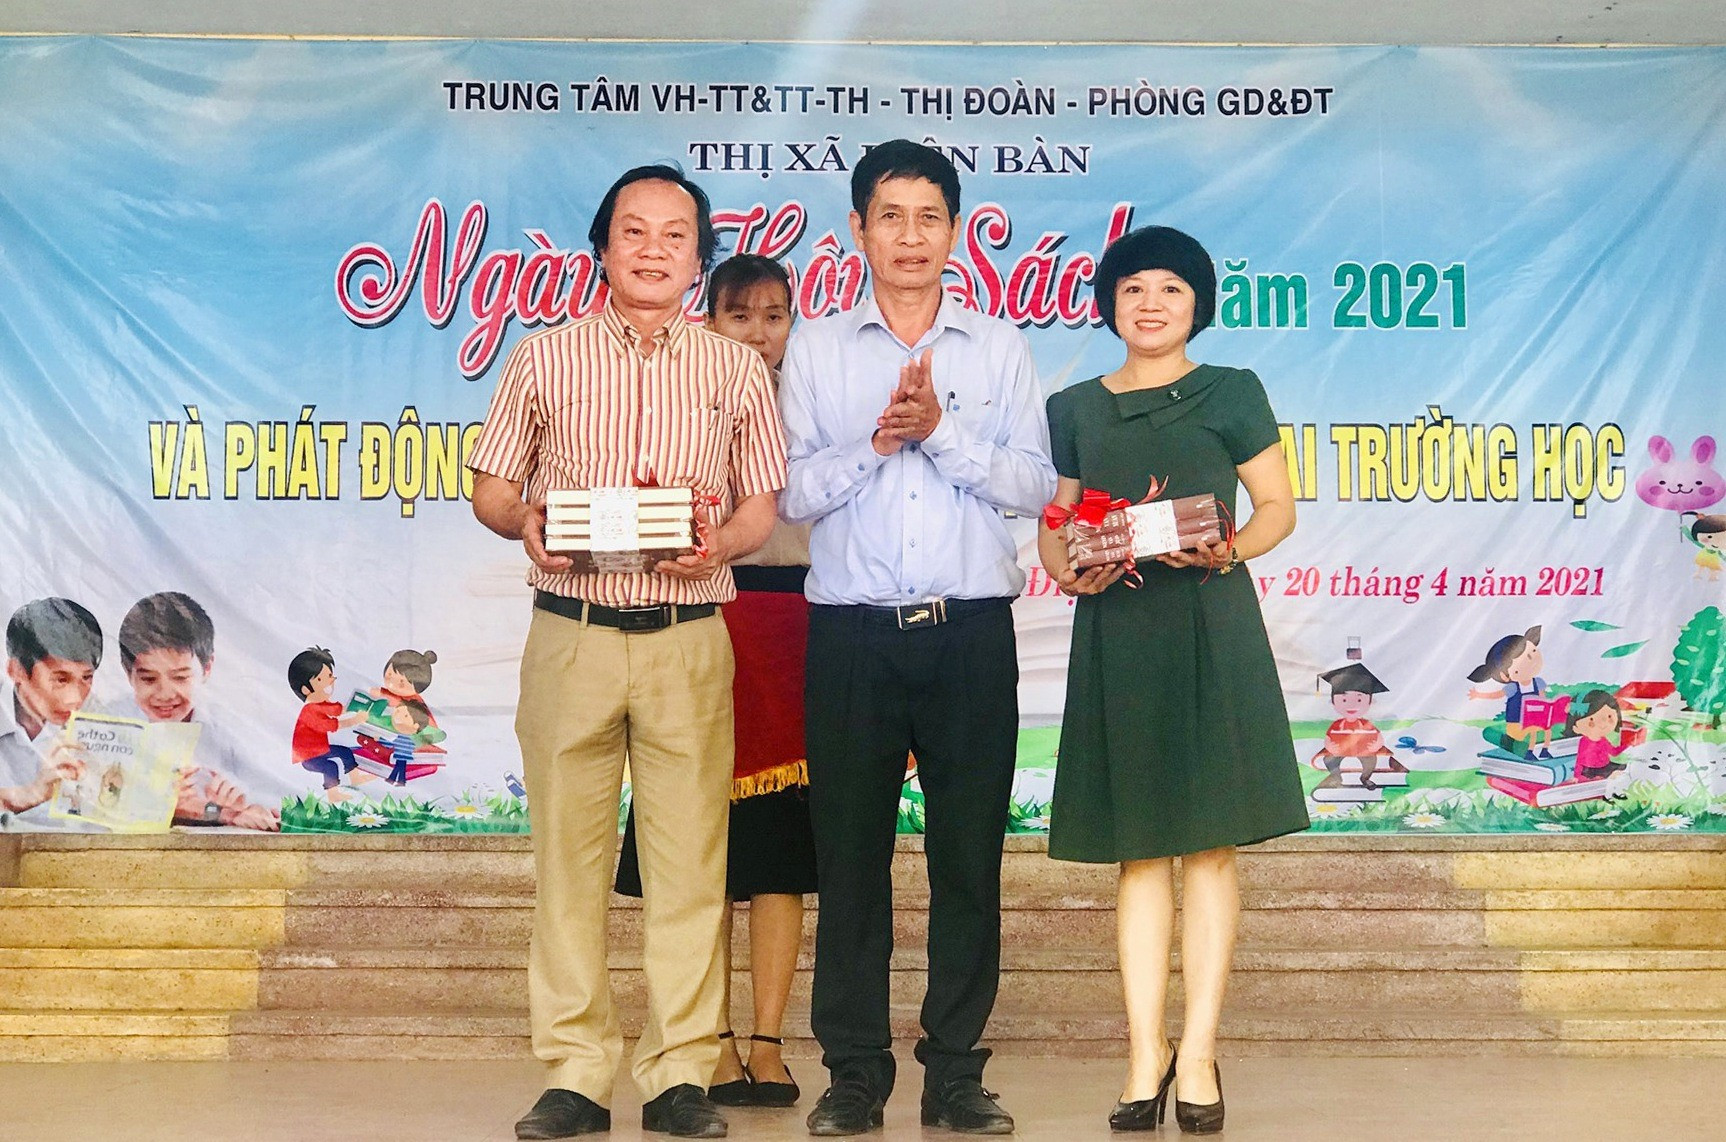 Lãnh đạo Trung tâm VH-TT & TT-TH Điện Bàn tiếp nhận bộ sách “Nguyễn Văn Xuân toàn tập” từ NSND Huỳnh Hùng. Ảnh: Q.T